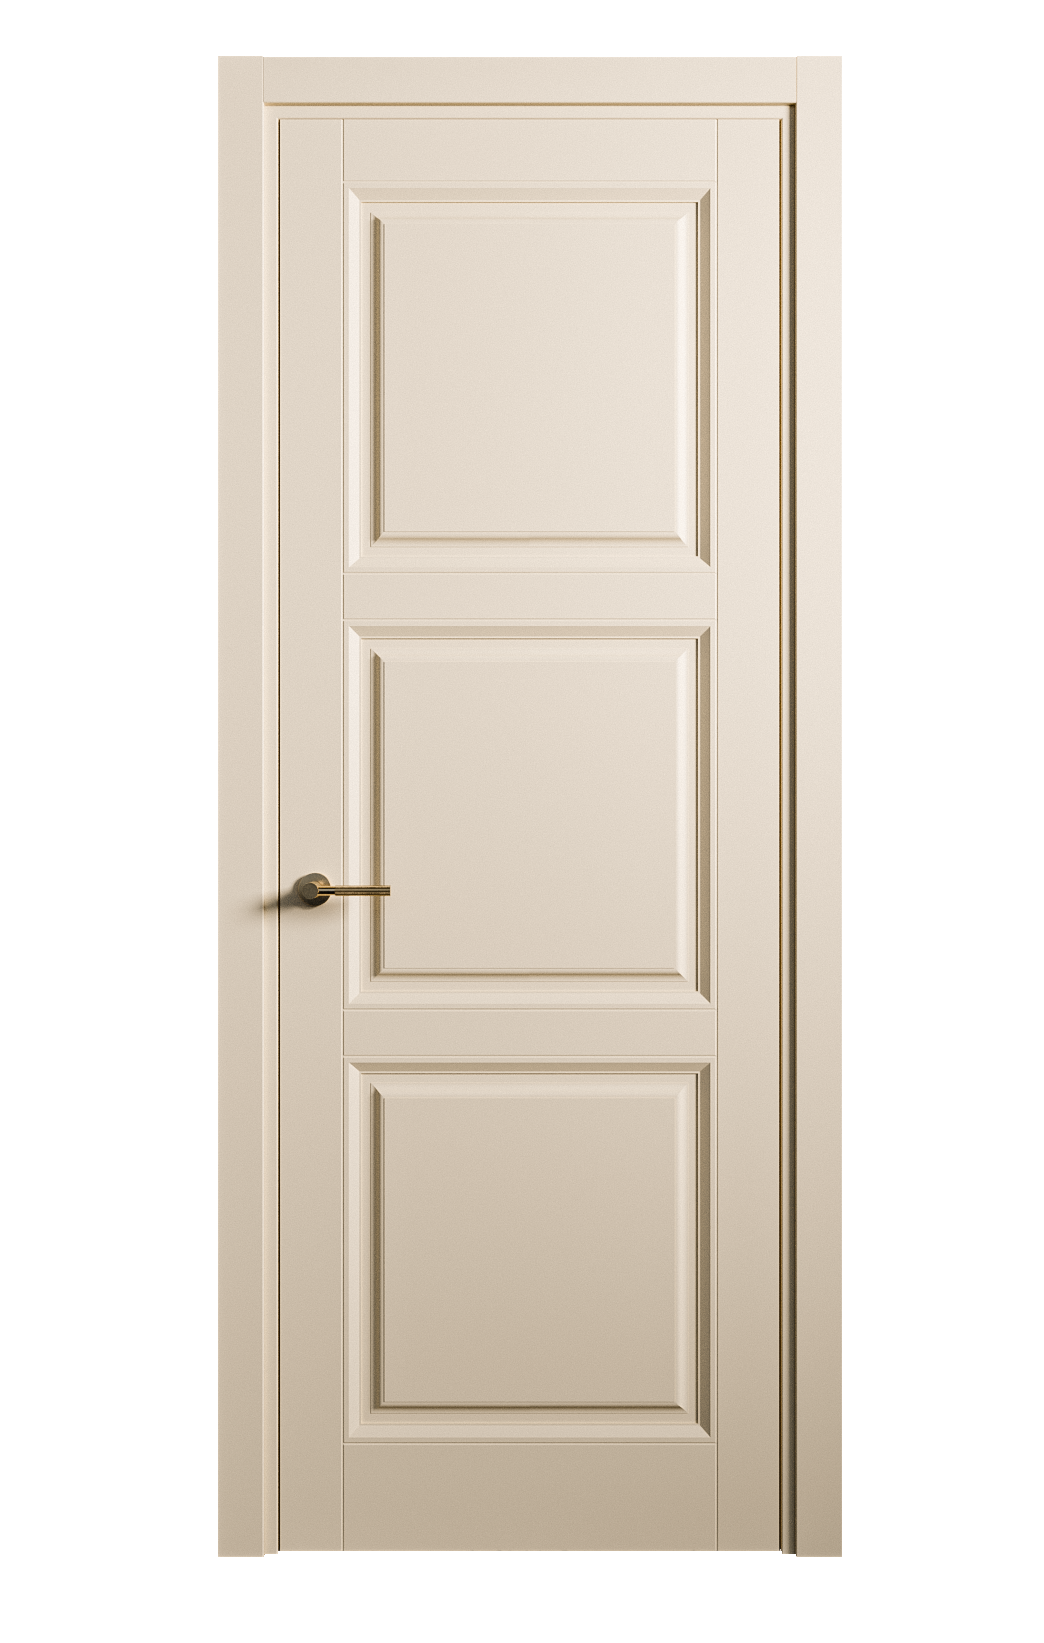 Межкомнатная дверь Venezia-3 глухая эмаль ral 1015 25764